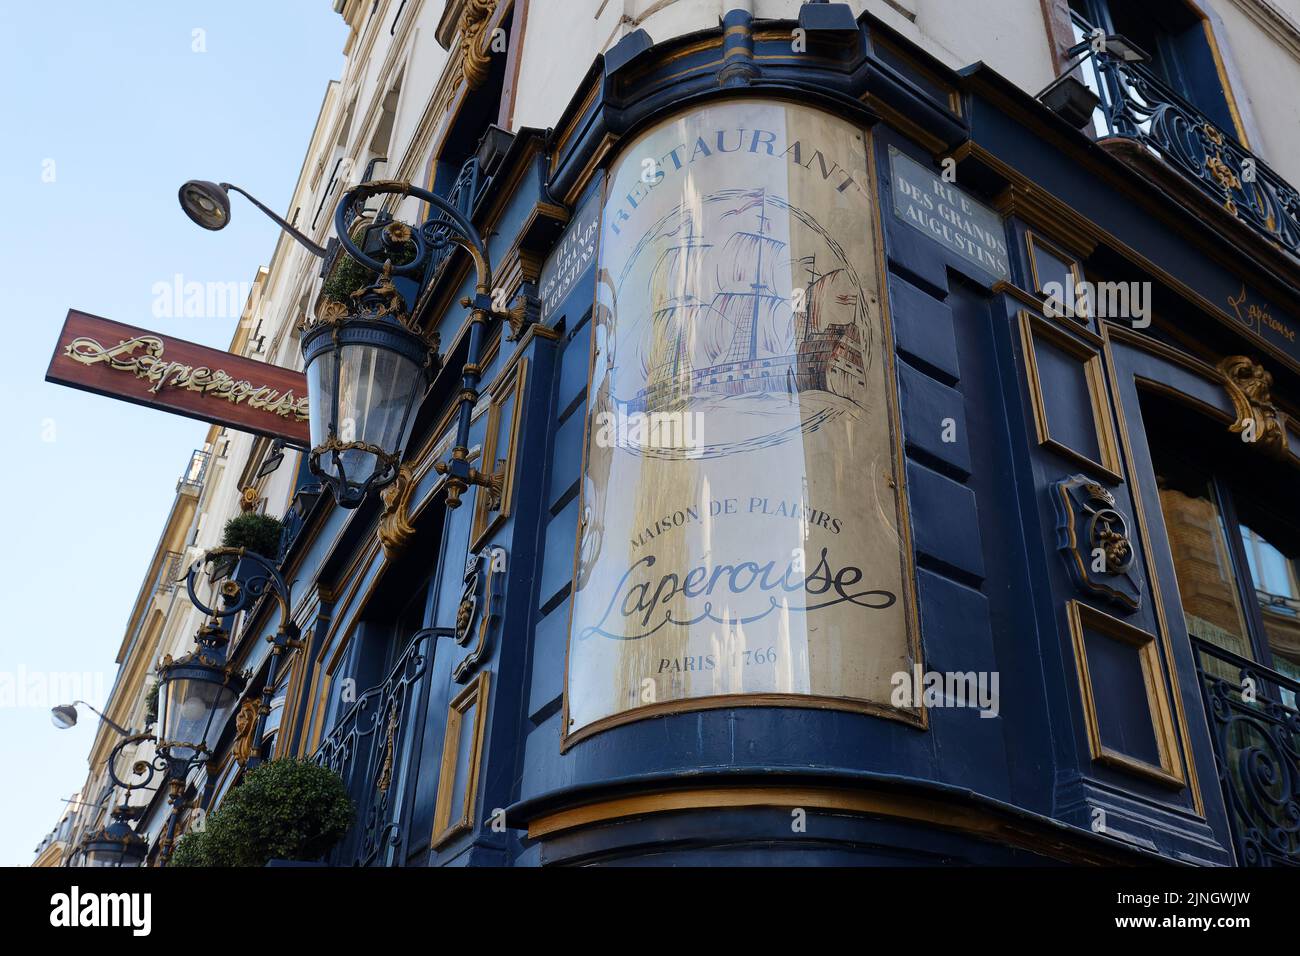 El signo del restaurante Laperouse es uno de los establecimientos más prestigiosos de París, famoso por su cocina francesa ideal y su historia. Situado en el casco antiguo Foto de stock